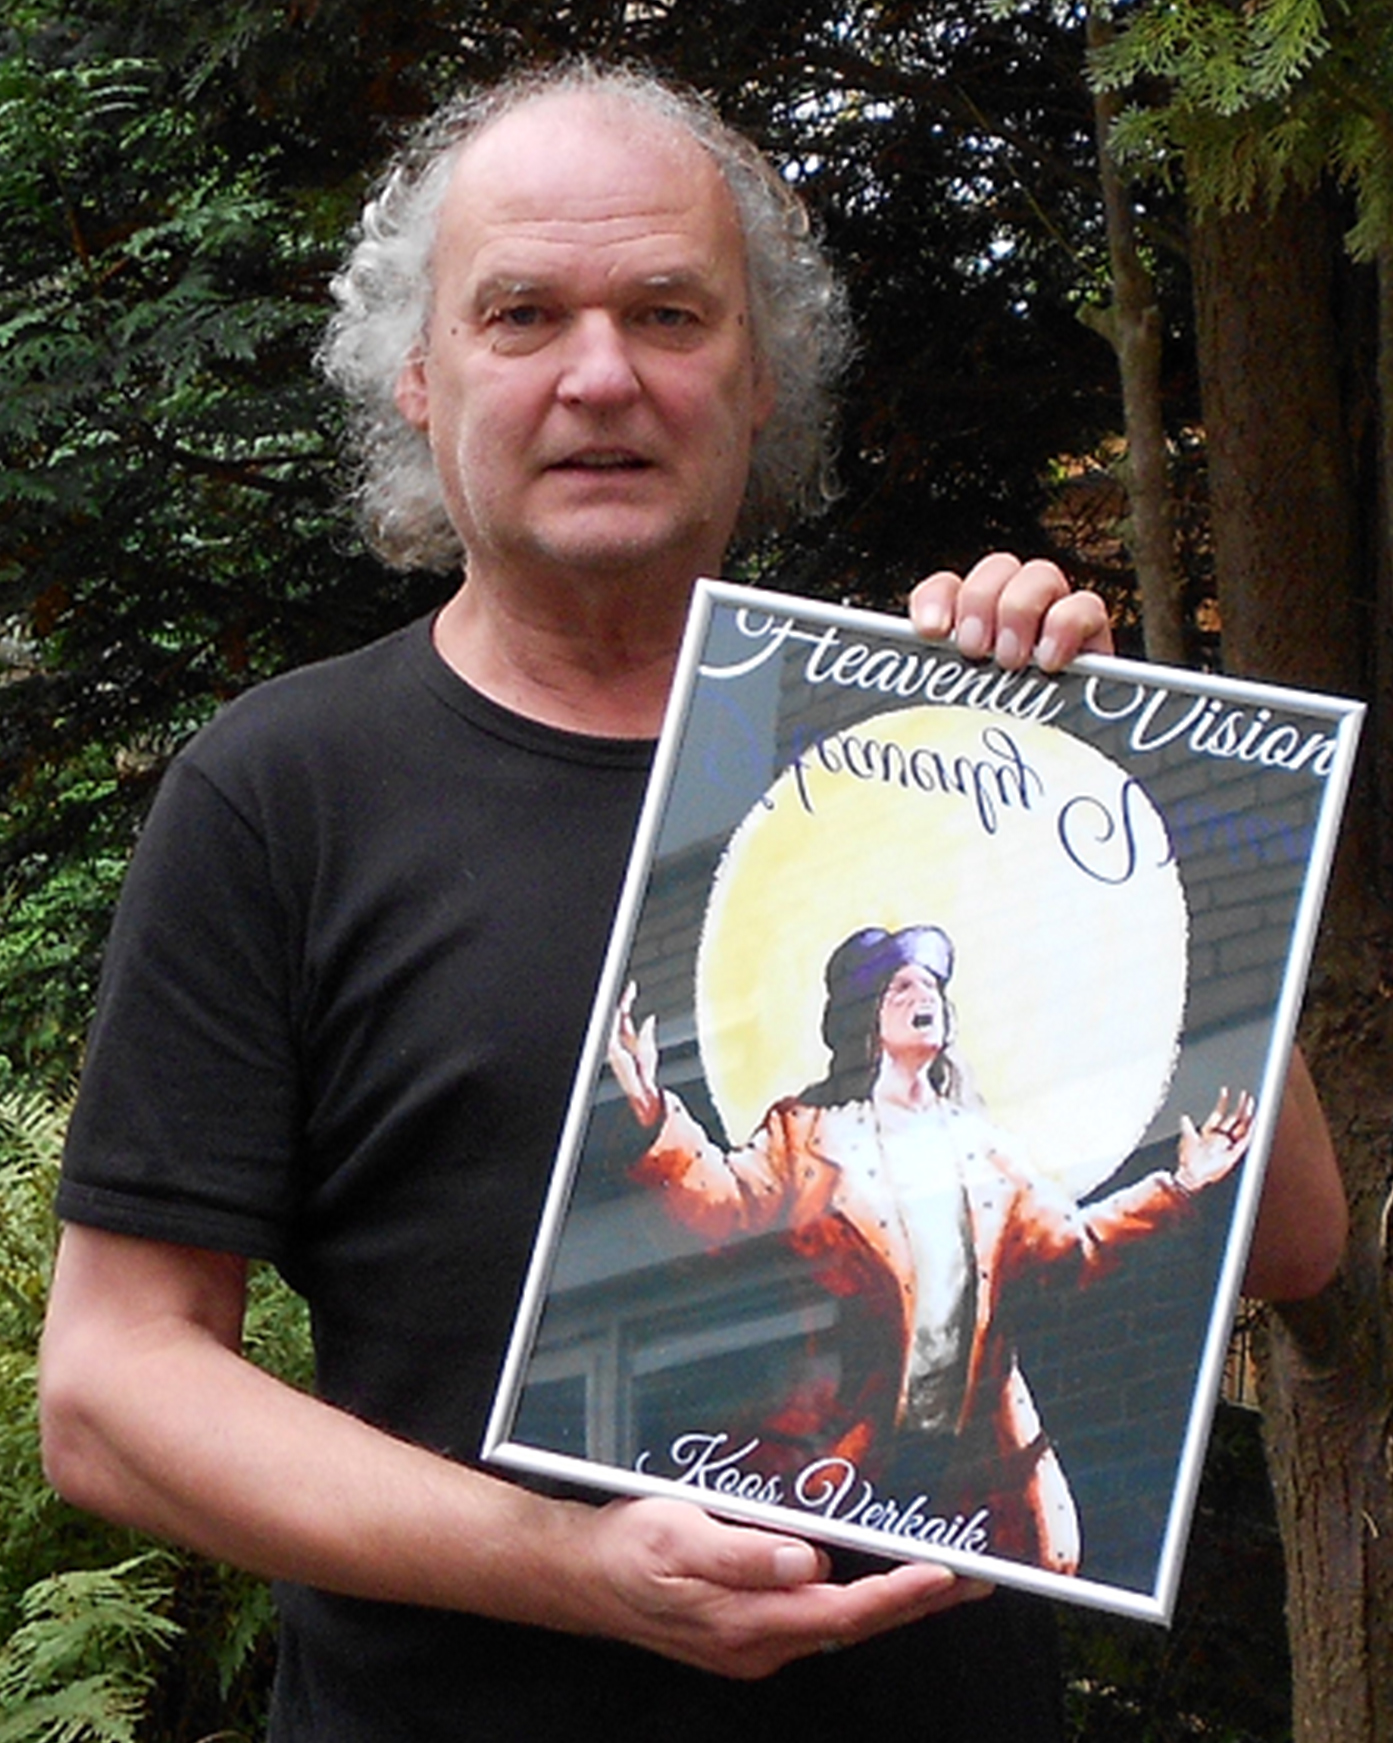 Koos Verkaik holding the cover of Heavenly Vision